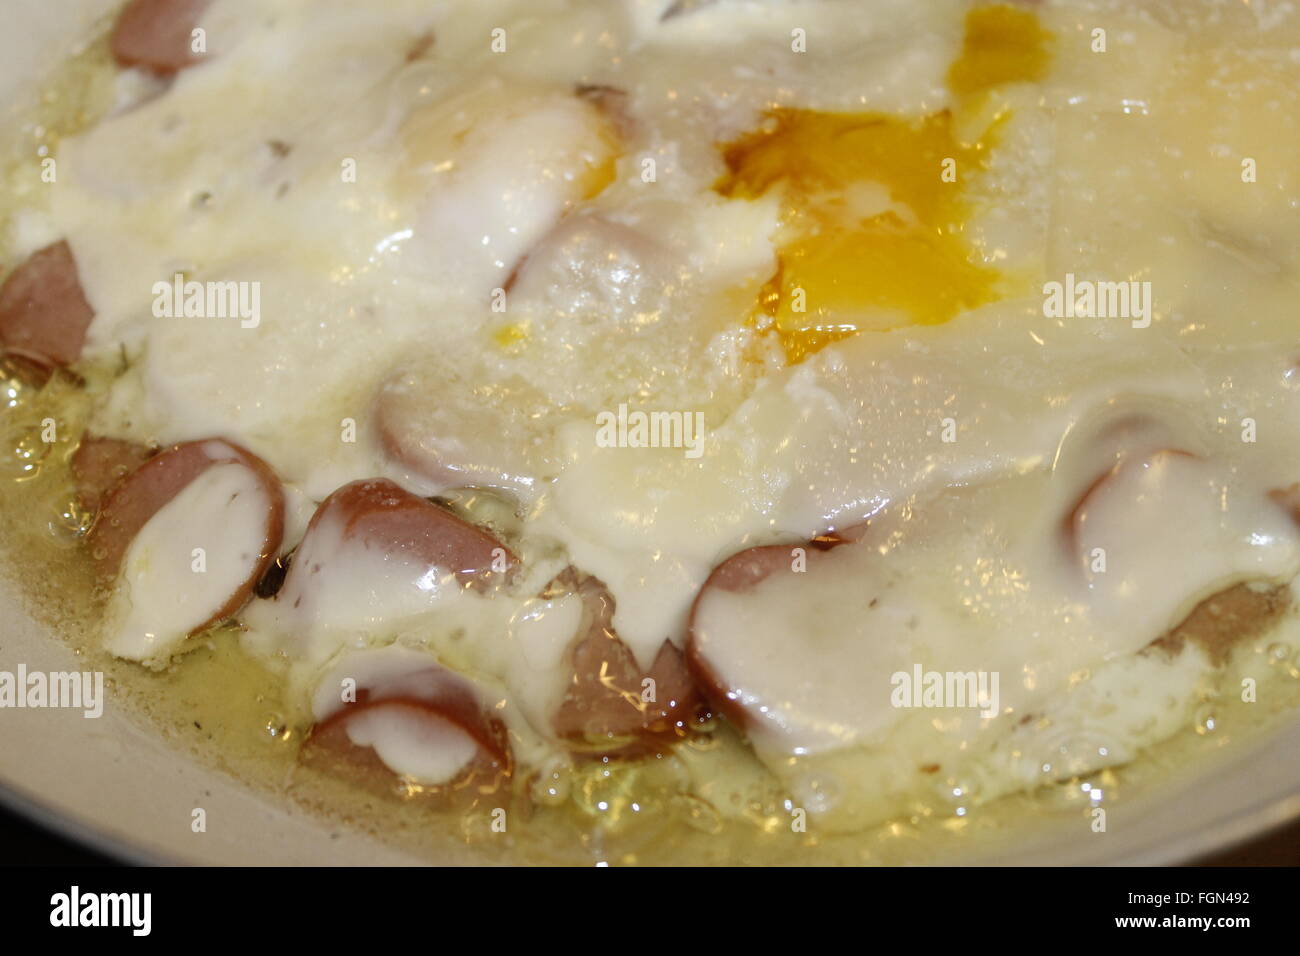 Gericht mit Eiern, Käse und Wurst Stockfoto